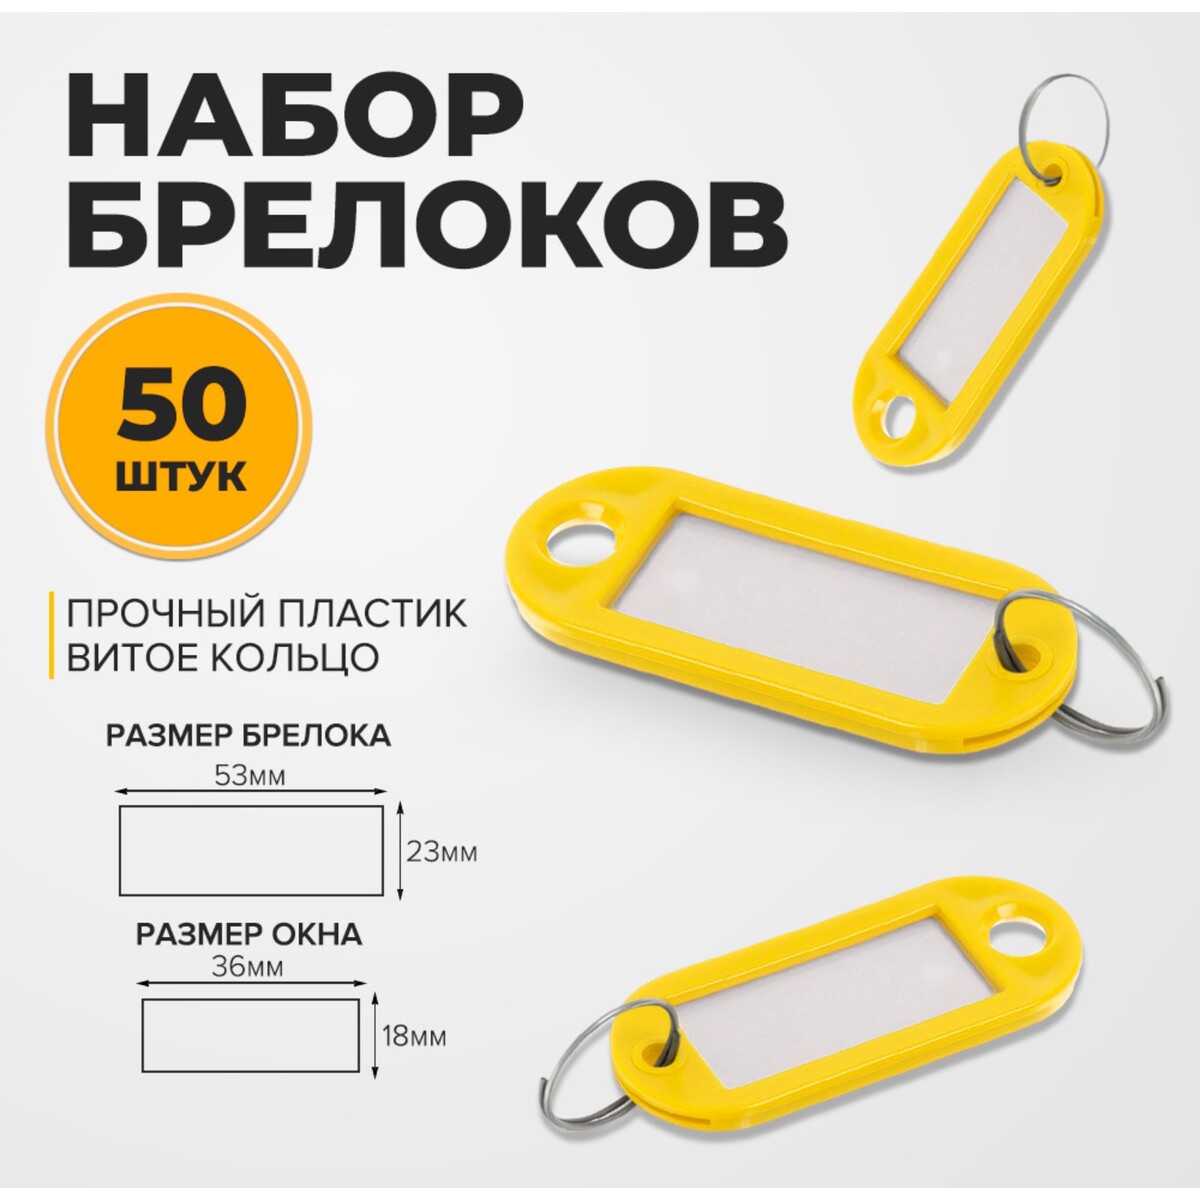 Набор брелоков для ключей, 50 штук, 53 мм, цвет желтый